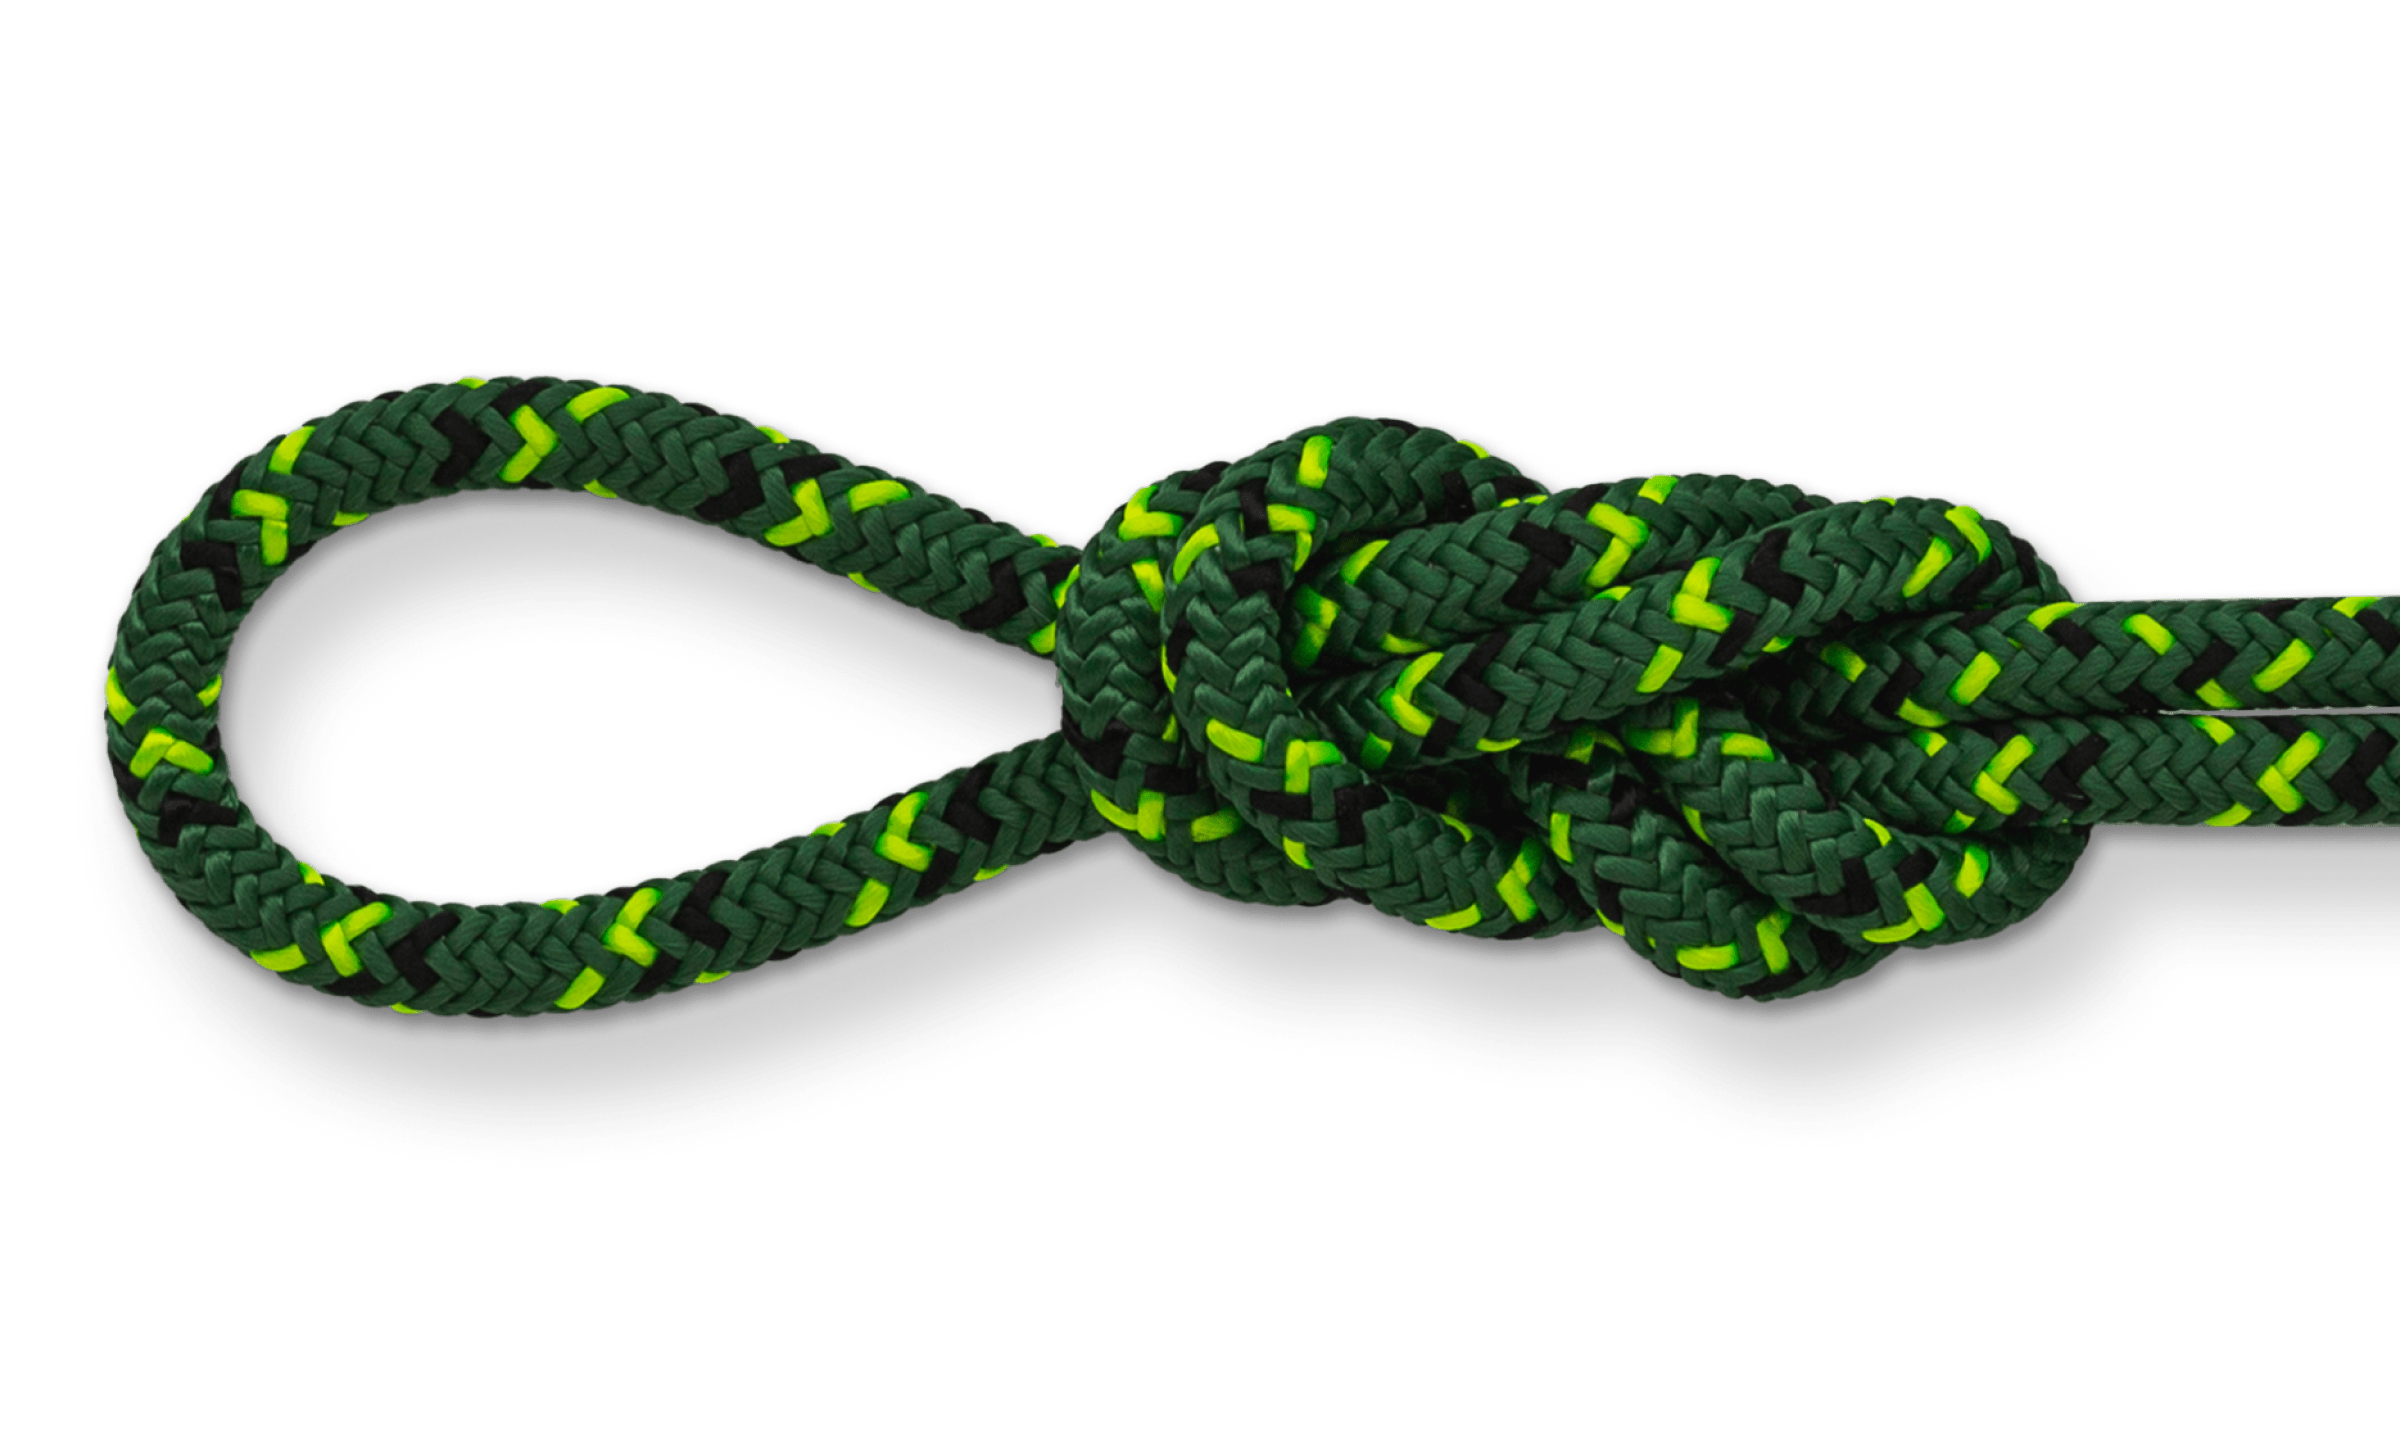 green prusik cord